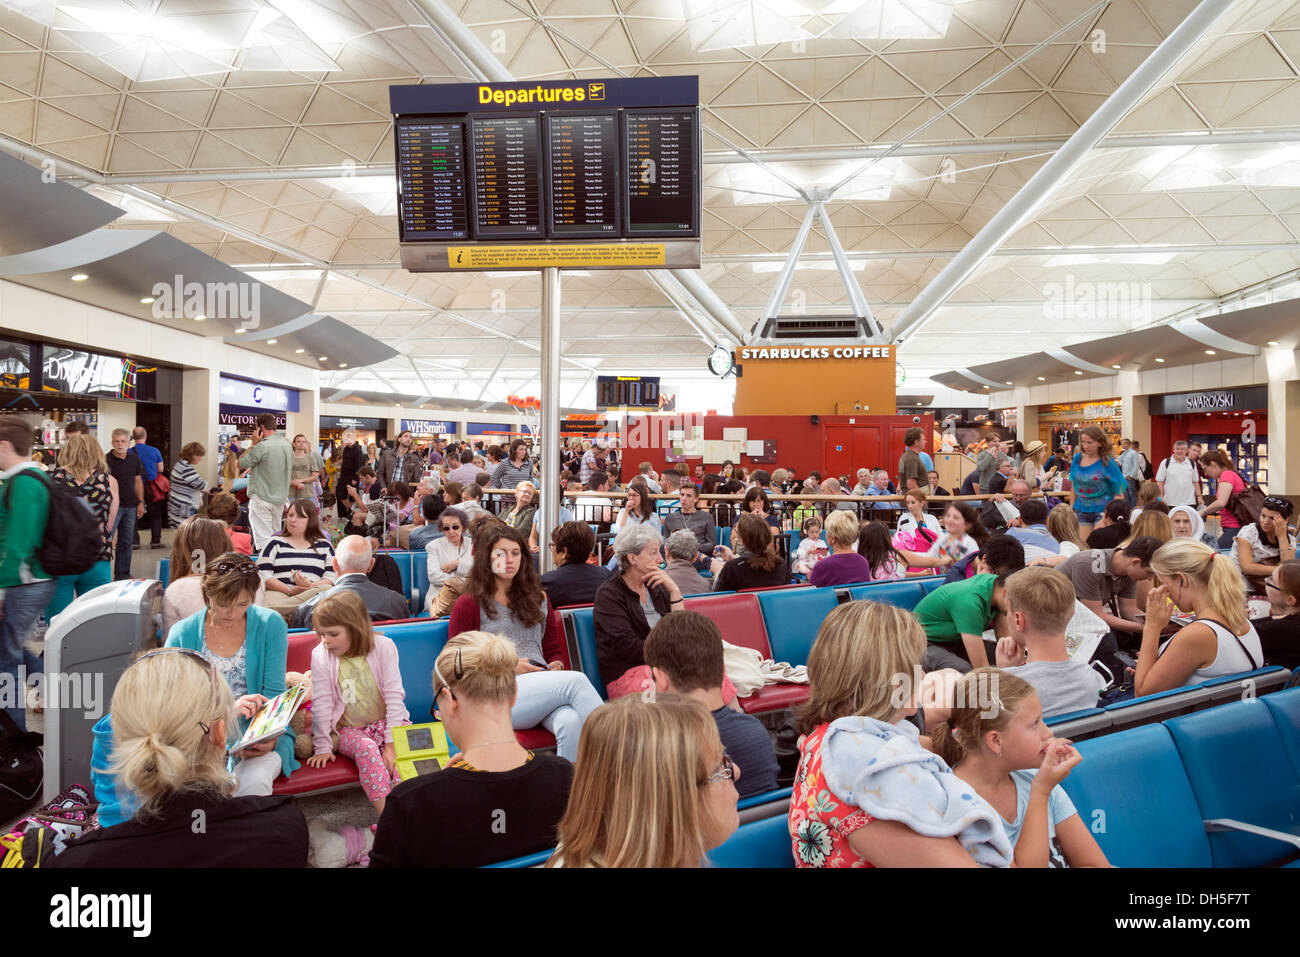 Les gens qui attendent dans le salon des départs de l'aéroport de Stansted, Angleterre, RU Banque D'Images